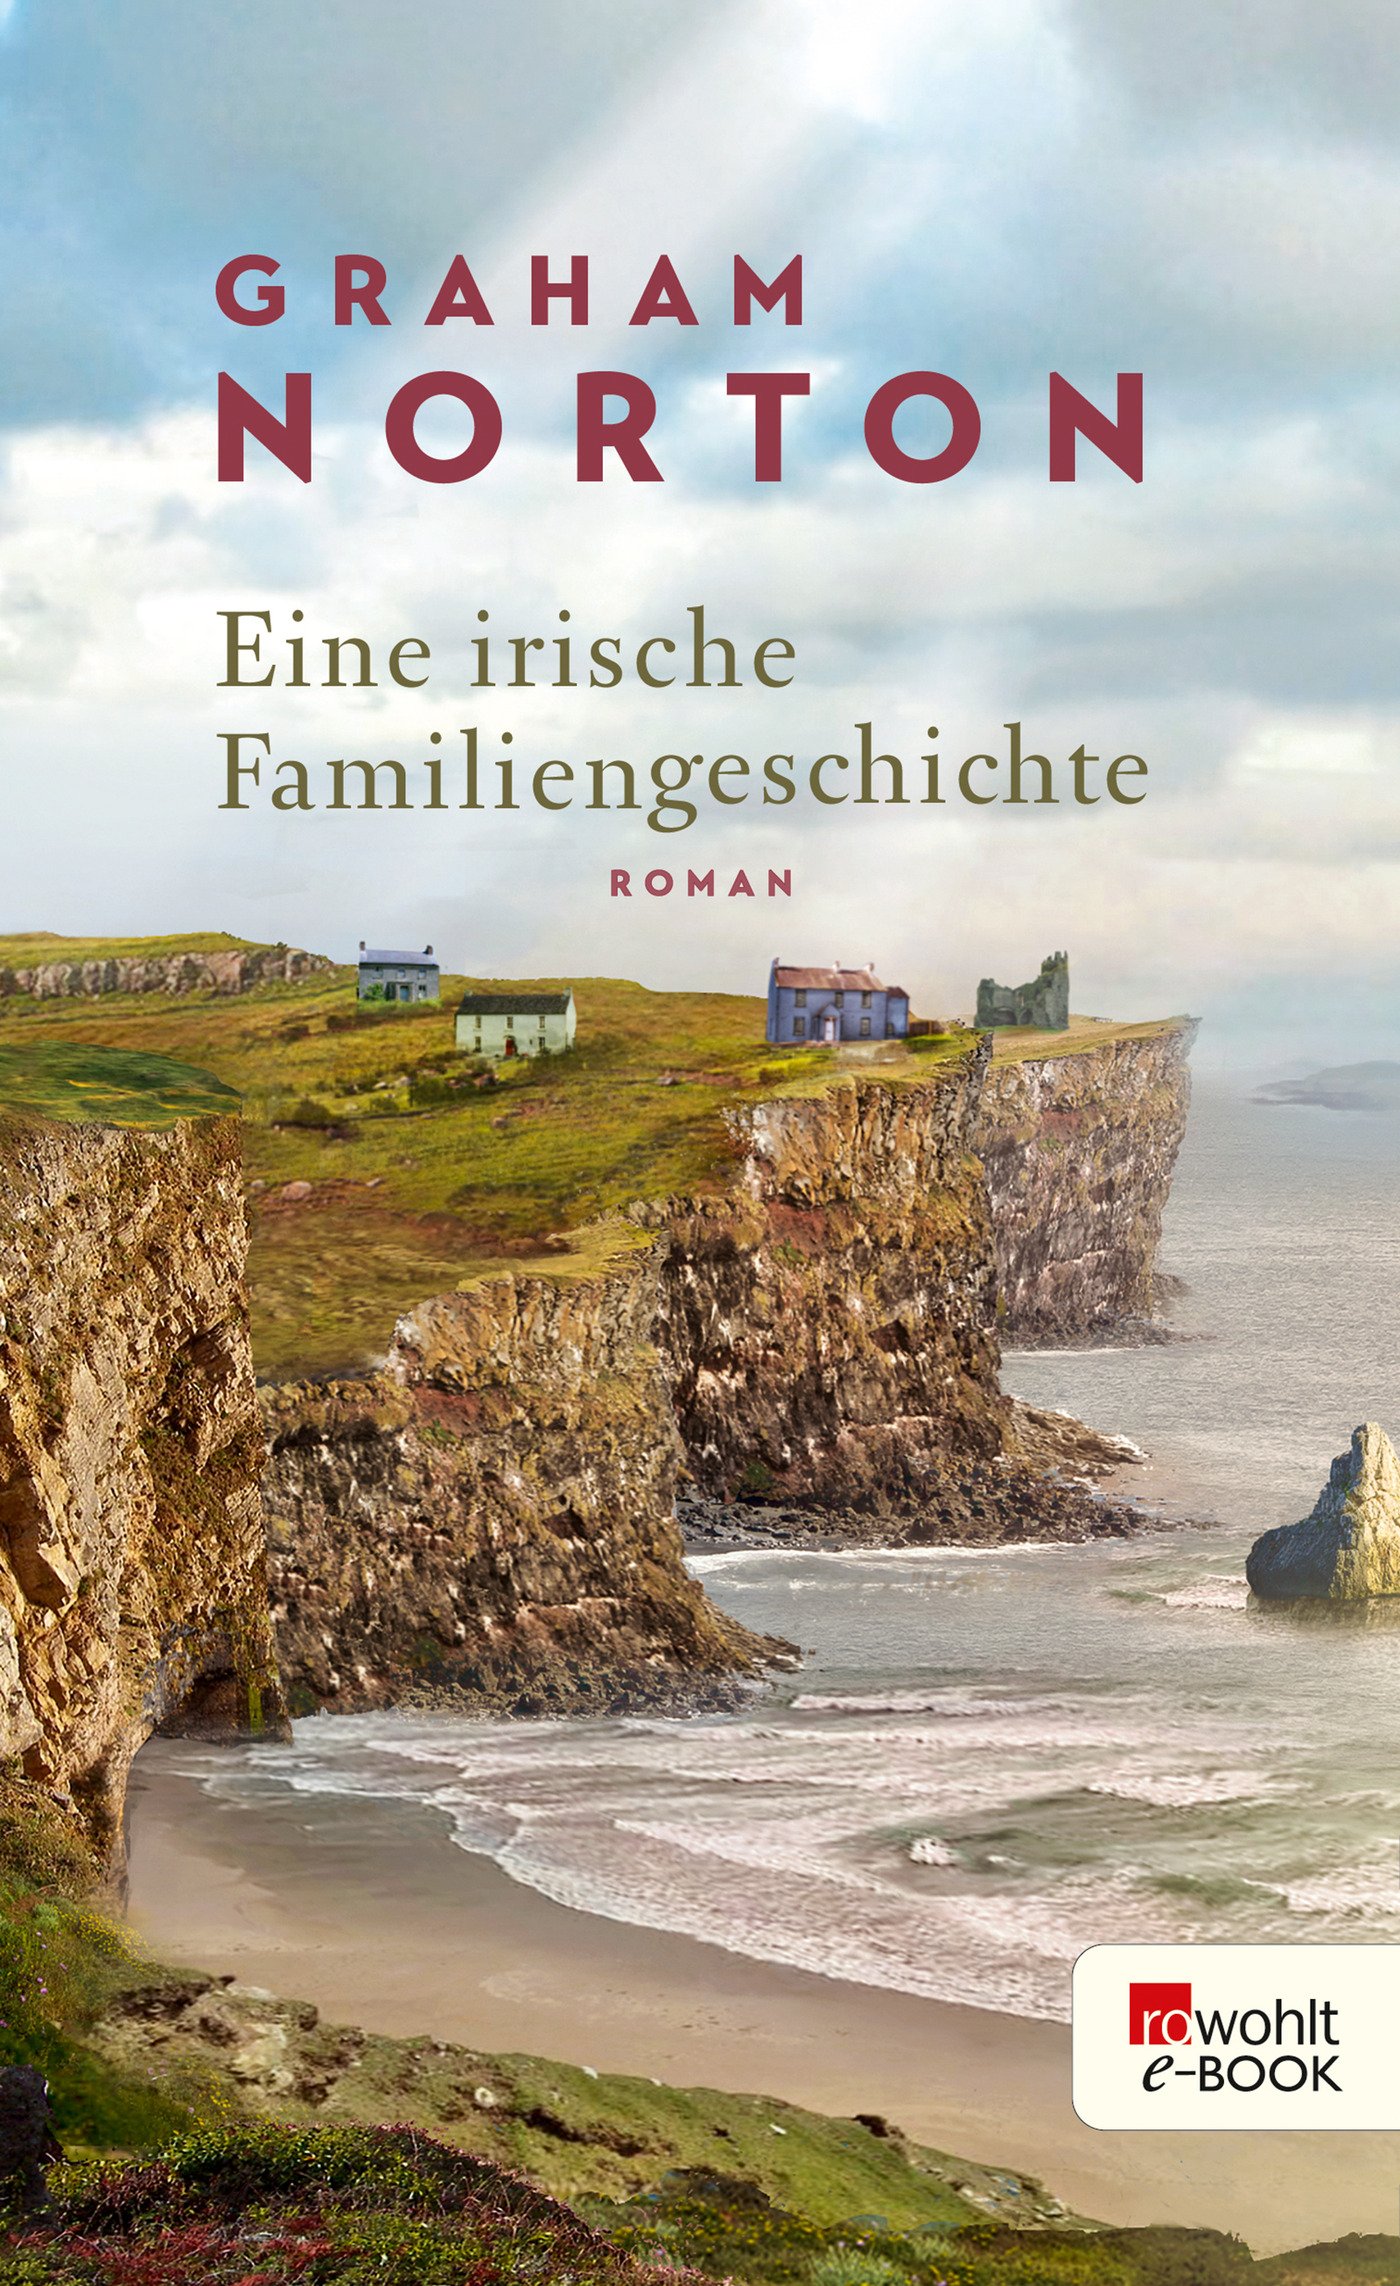 Norton - Eine irische Familiengeschichte (c) Rowohlt E-Book